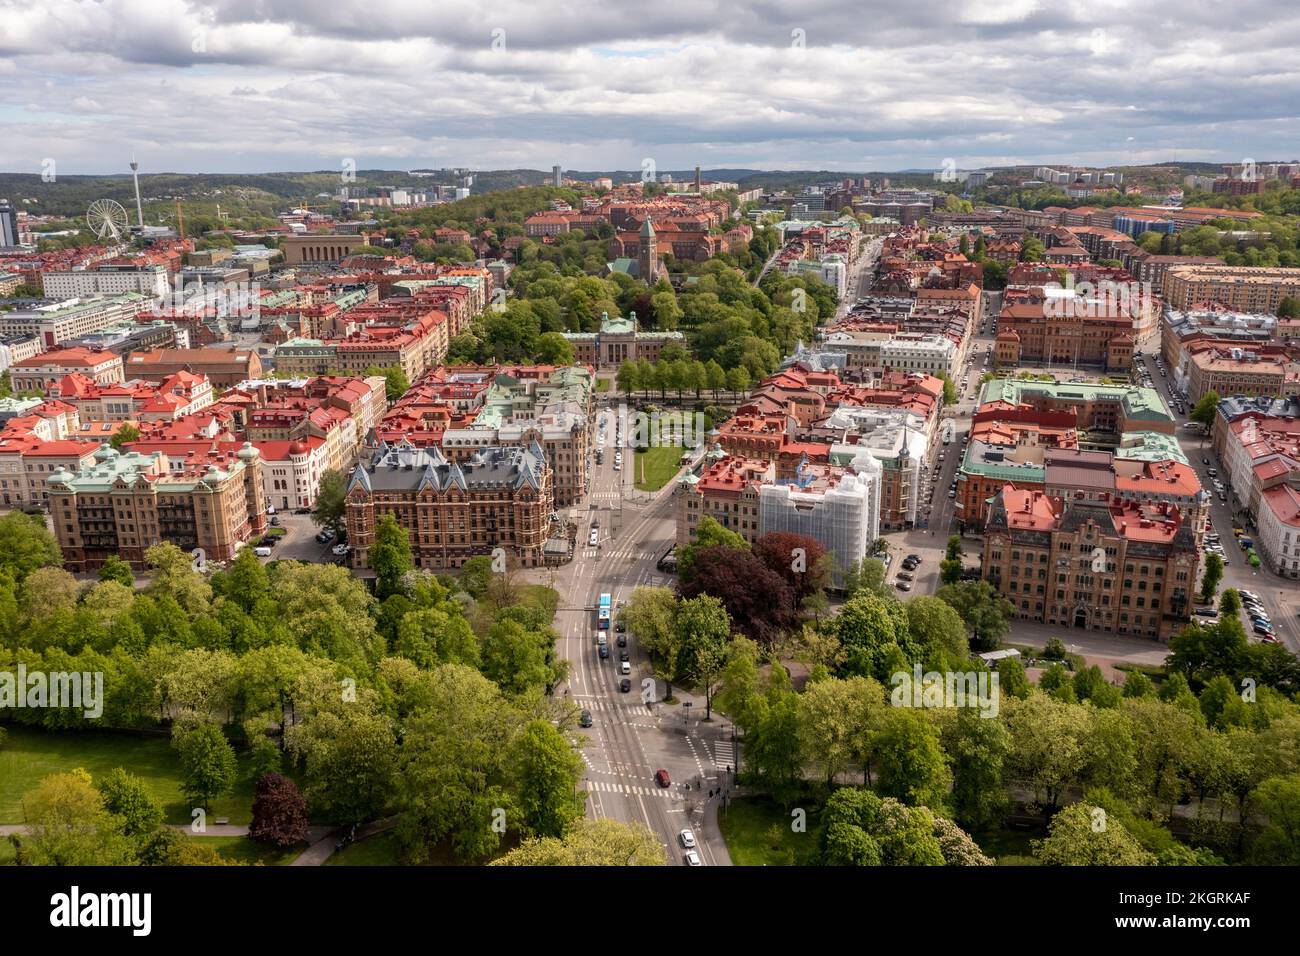 Sweden, Vastra Gotaland County, Gothenburg, Aerial view of Vasastaden district Stock Photo